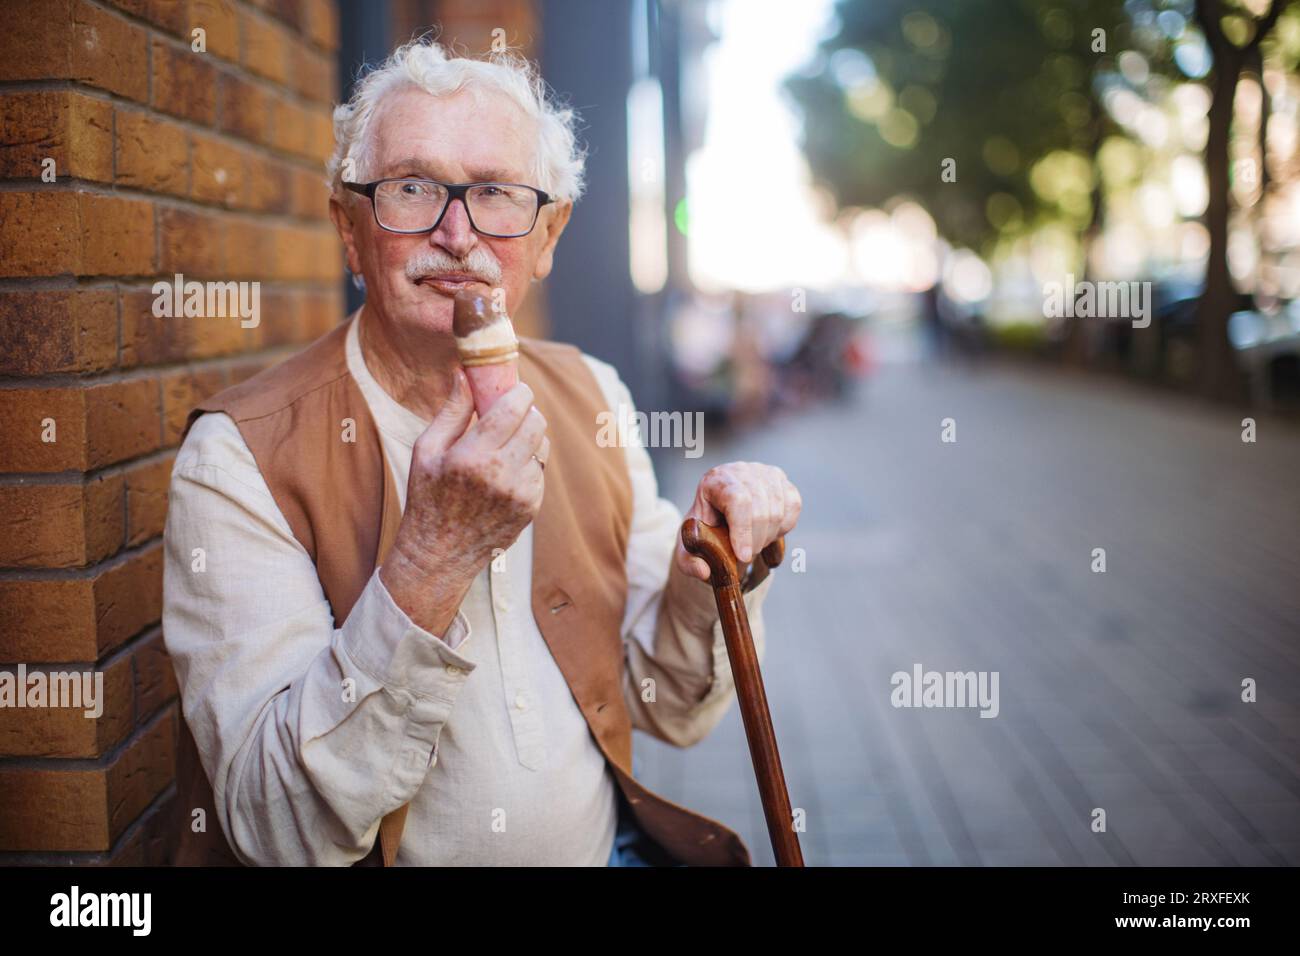 Porträt eines älteren Mannes mit Gehstock, der an einem heißen Sommertag Eis isst. Stockfoto